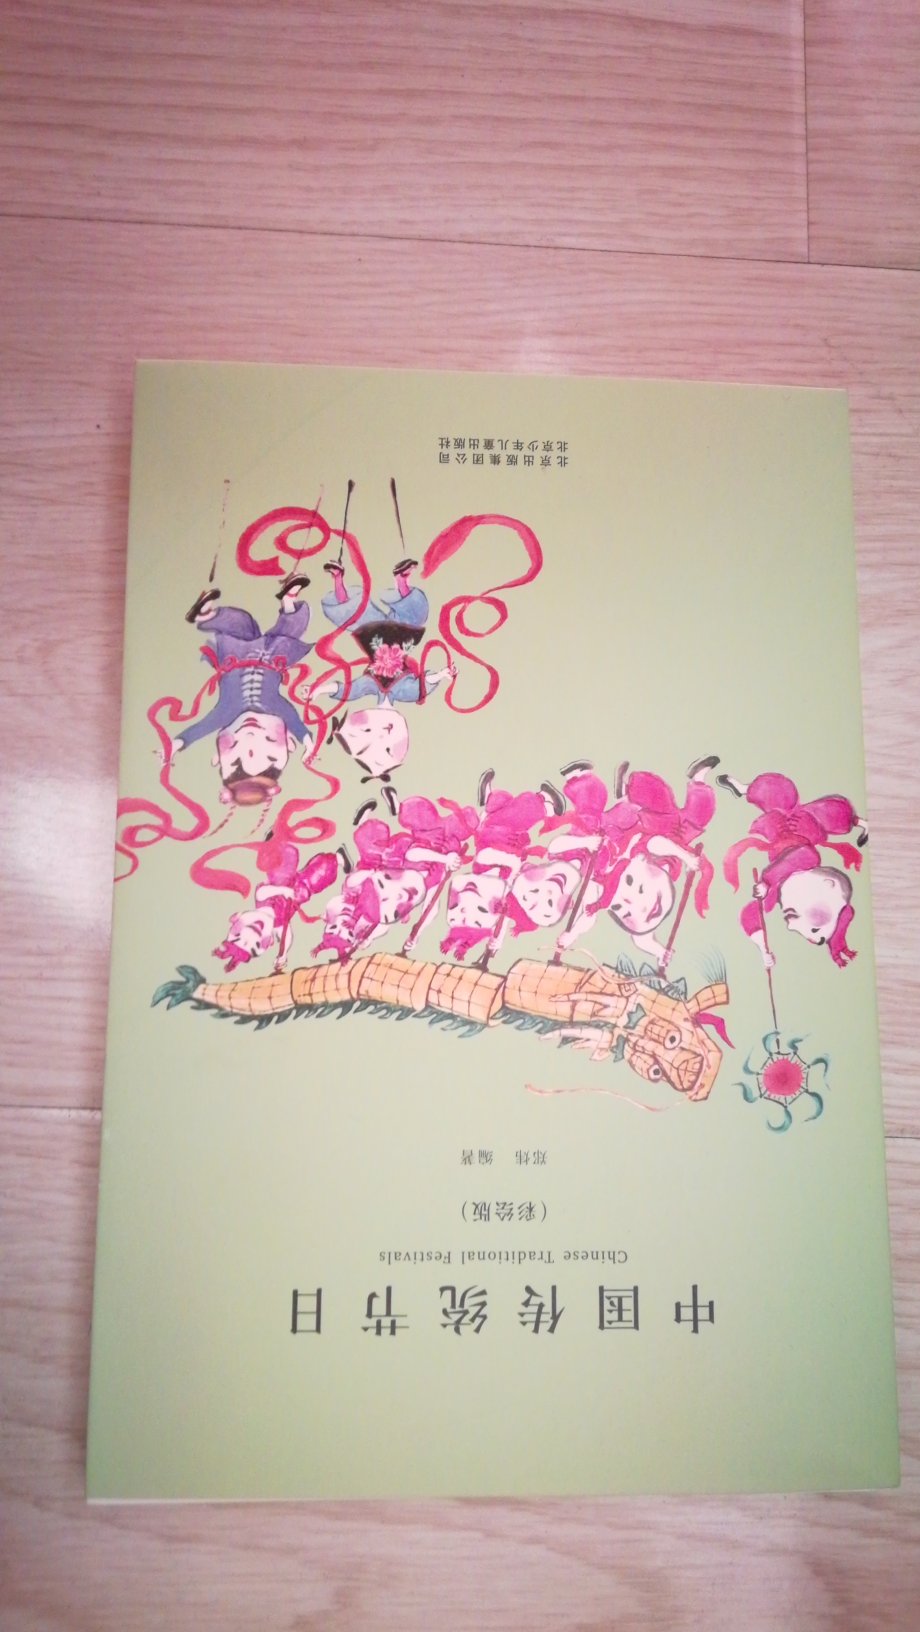 此书是学校推荐的，刚收到，还没看，应该是对孩子了解中国文化有帮助。